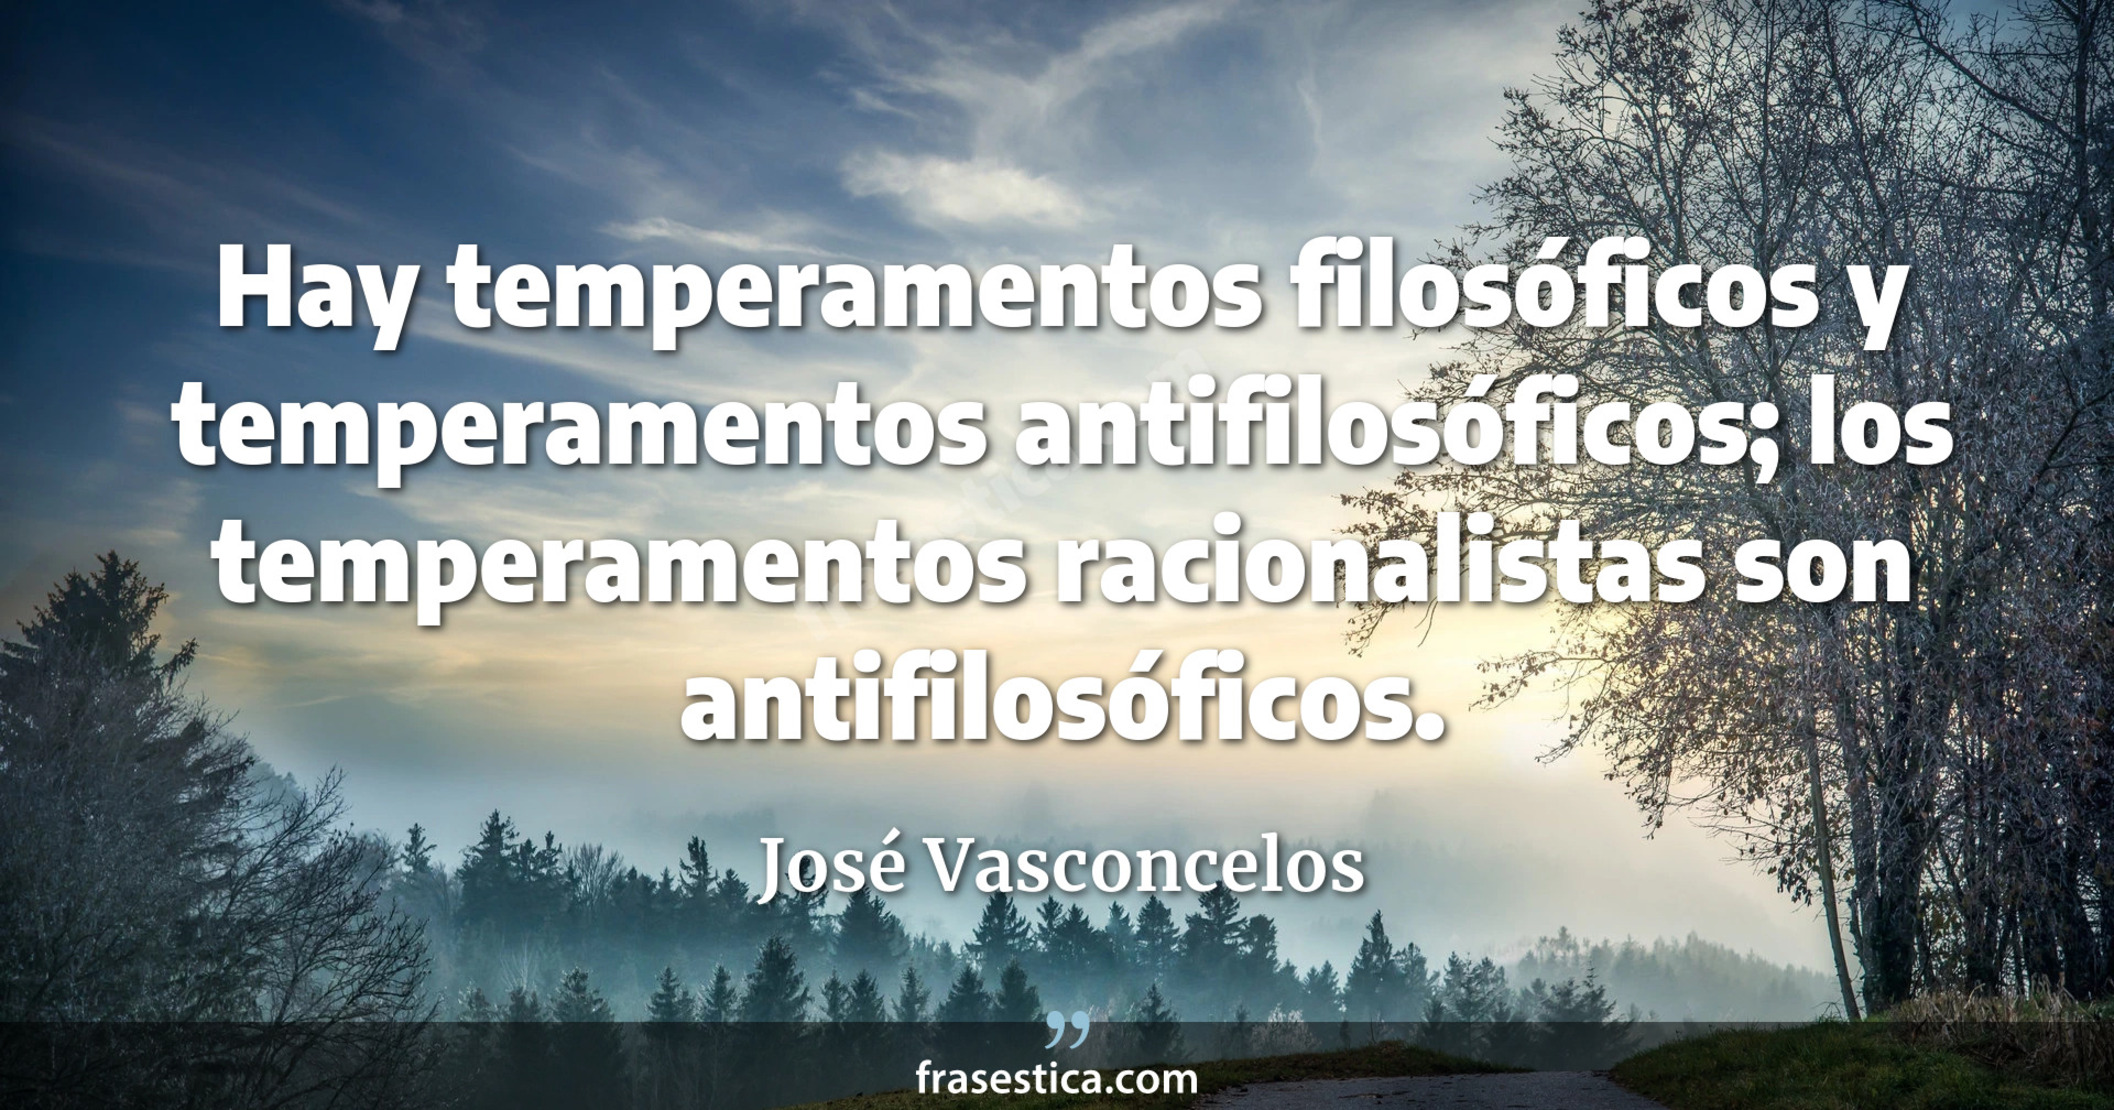 Hay temperamentos filosóficos y temperamentos antifilosóficos; los temperamentos racionalistas son antifilosóficos. - José Vasconcelos